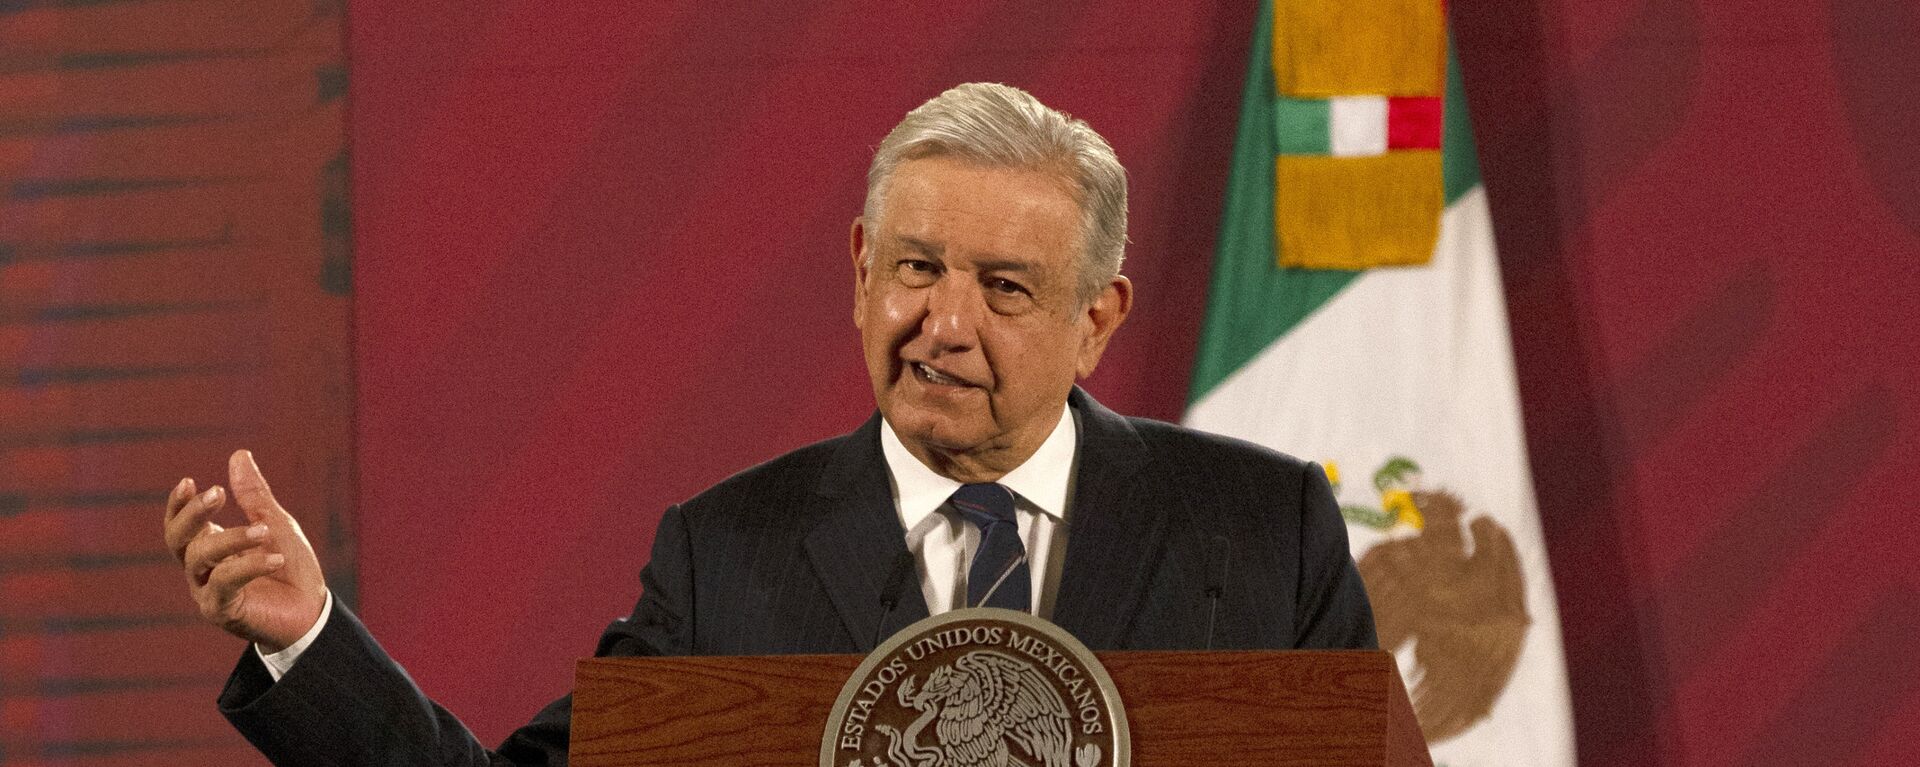 Andrés Manuel López Obrador, presidente de México - Sputnik Mundo, 1920, 23.08.2021